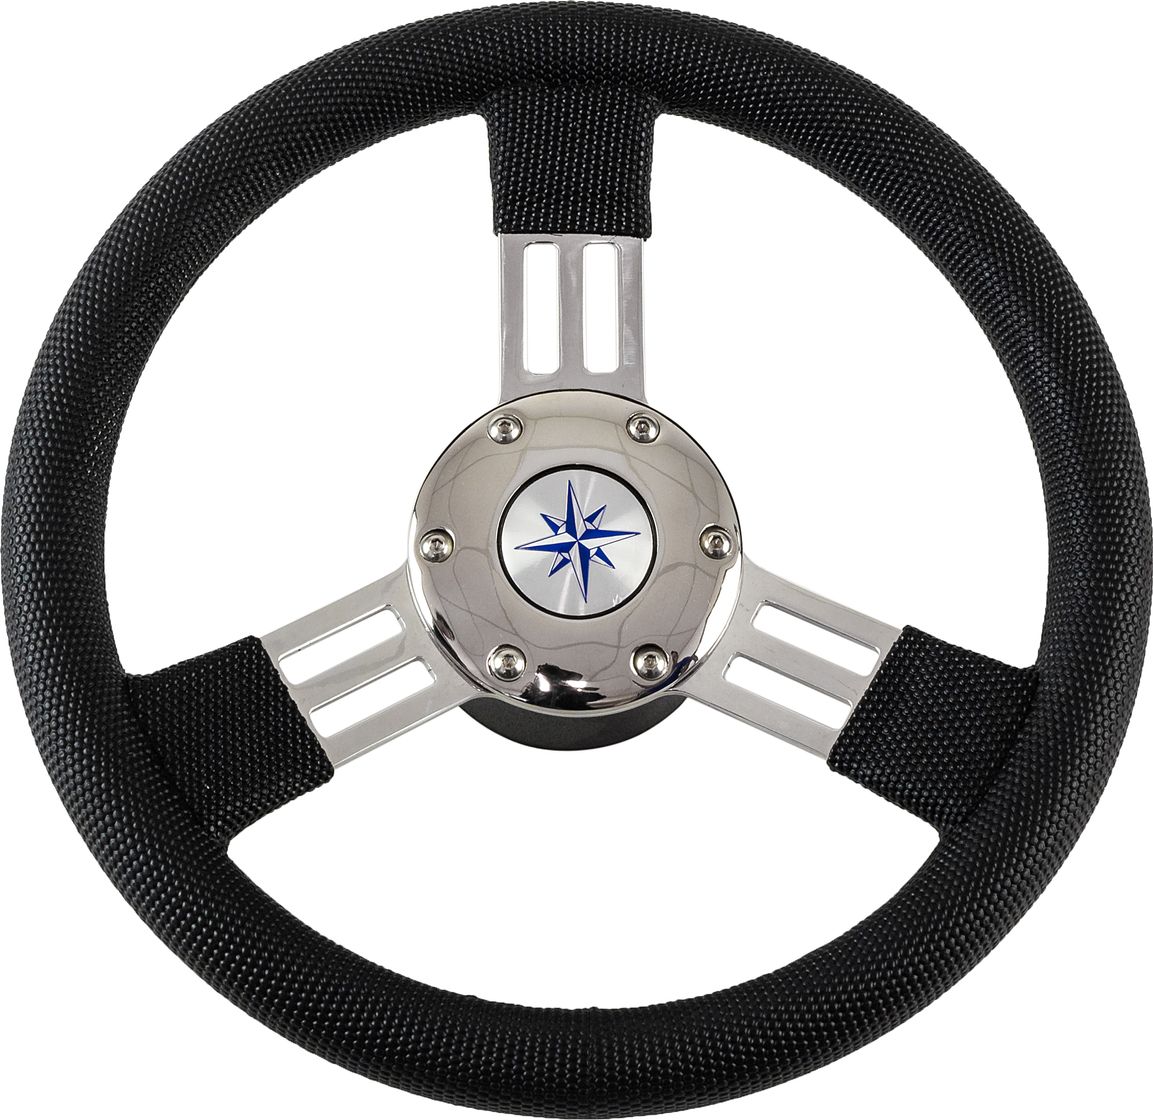 Рулевое колесо PEGASO обод черный, спицы серебряные д. 300 мм VN13327-01 рулевое колесо riviera обод и спицы д 350 мм vn8001 01